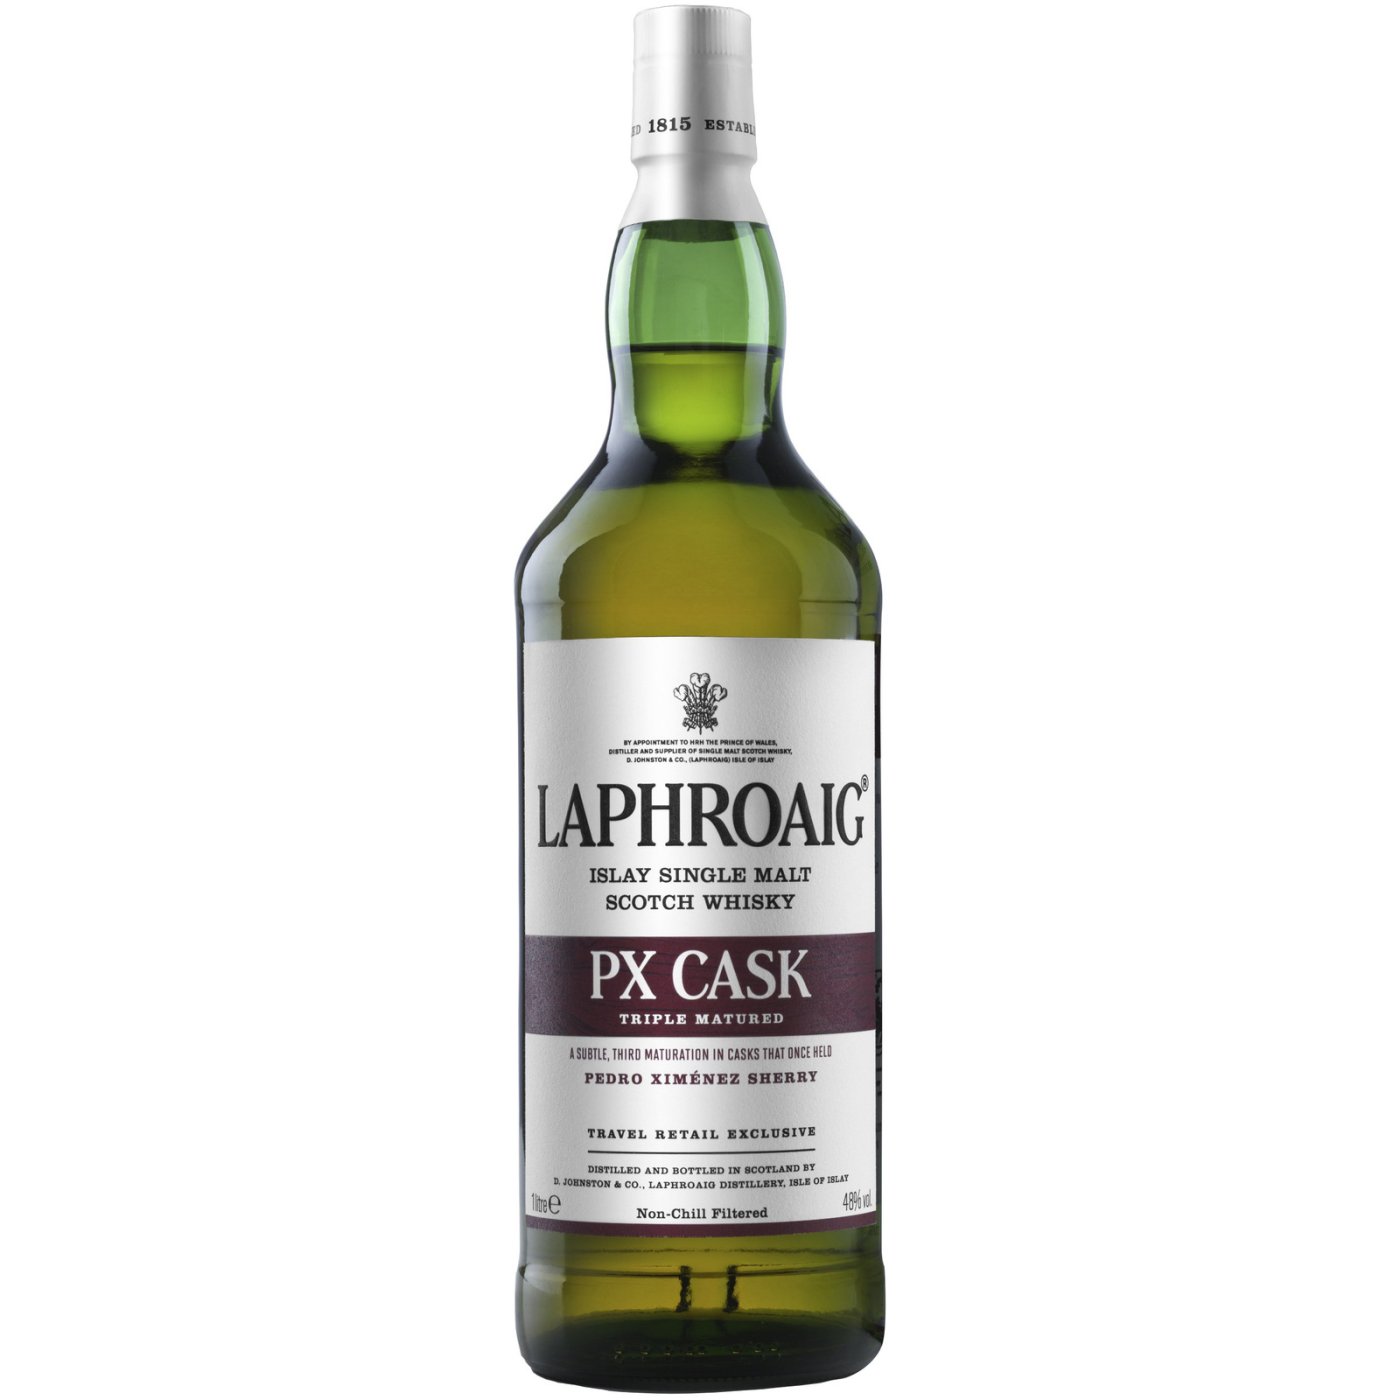 Laphroaig - PX Cask 1 liter